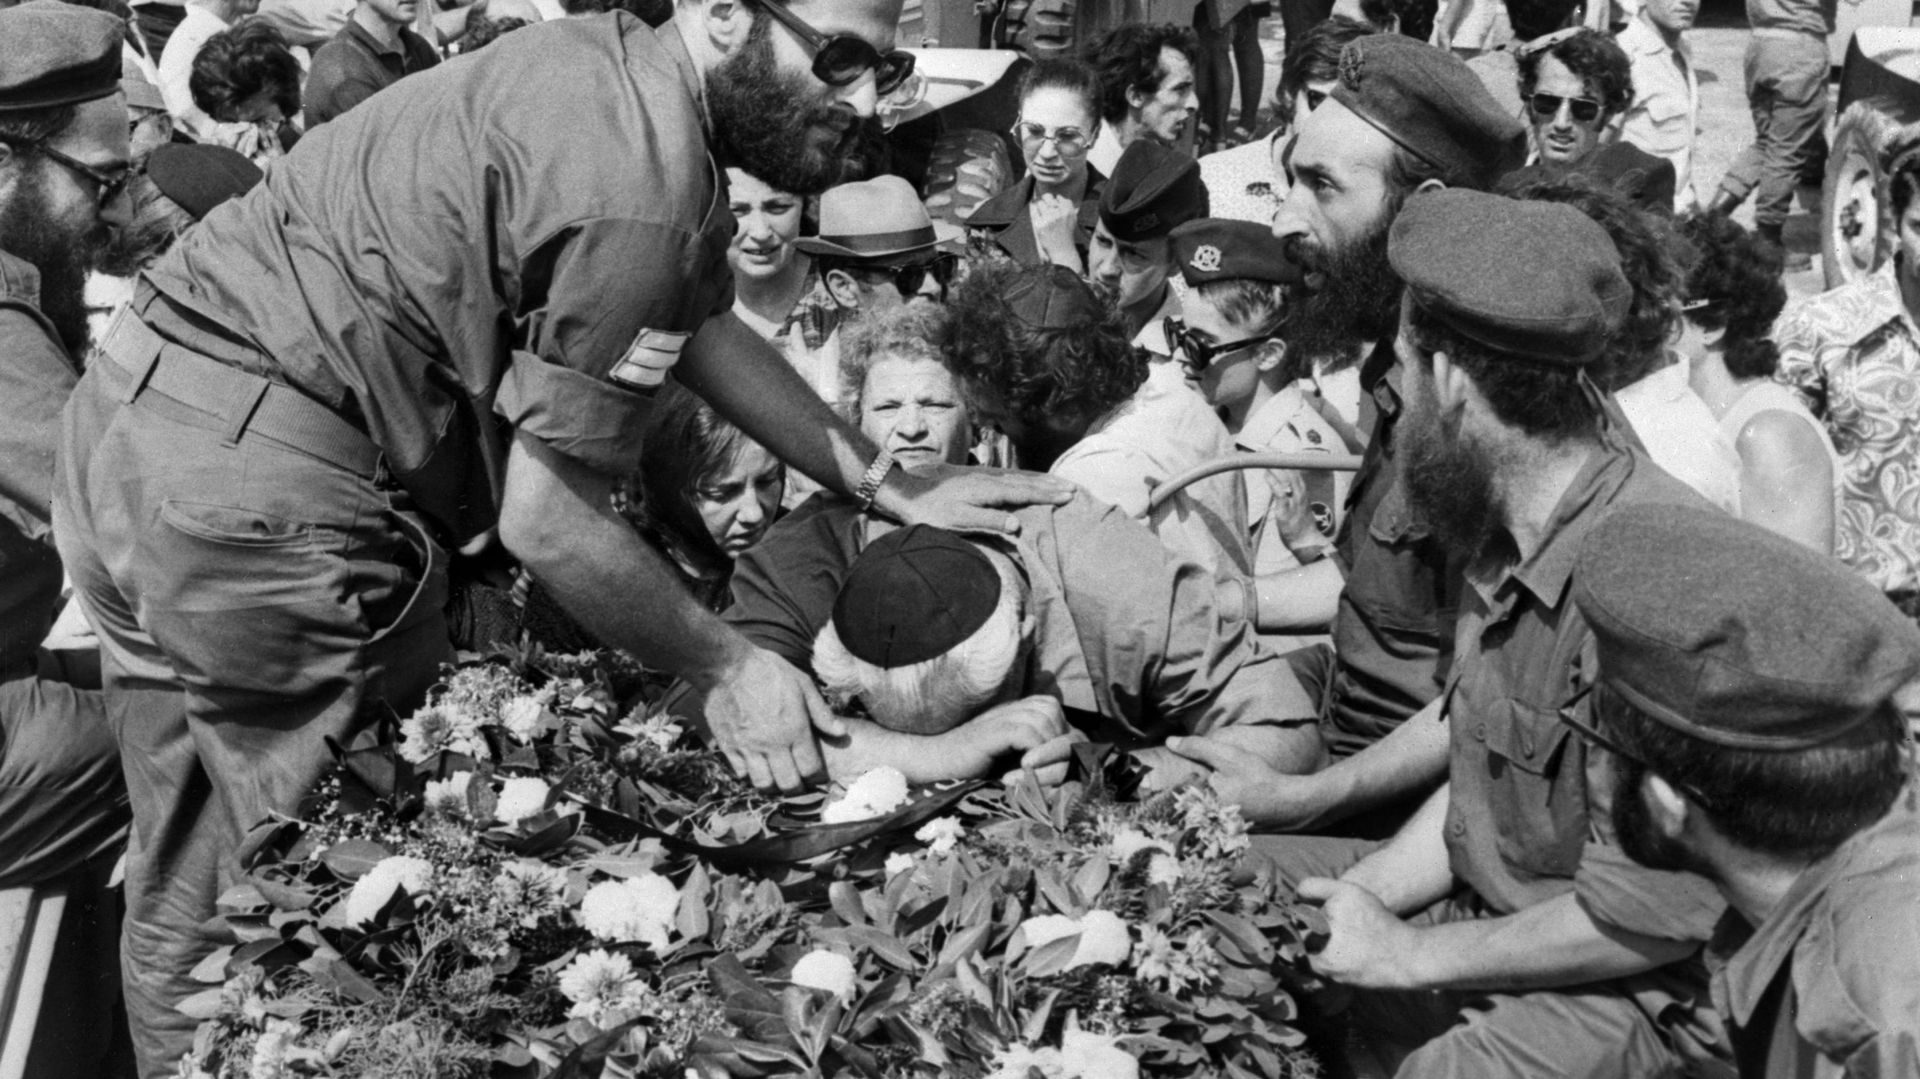 Des membres de la famille pleurent pendant les funérailles de l’équipe olympique israélienne victime de la prise d’otages palestinienne, en septembre 1972 à Tel Aviv.